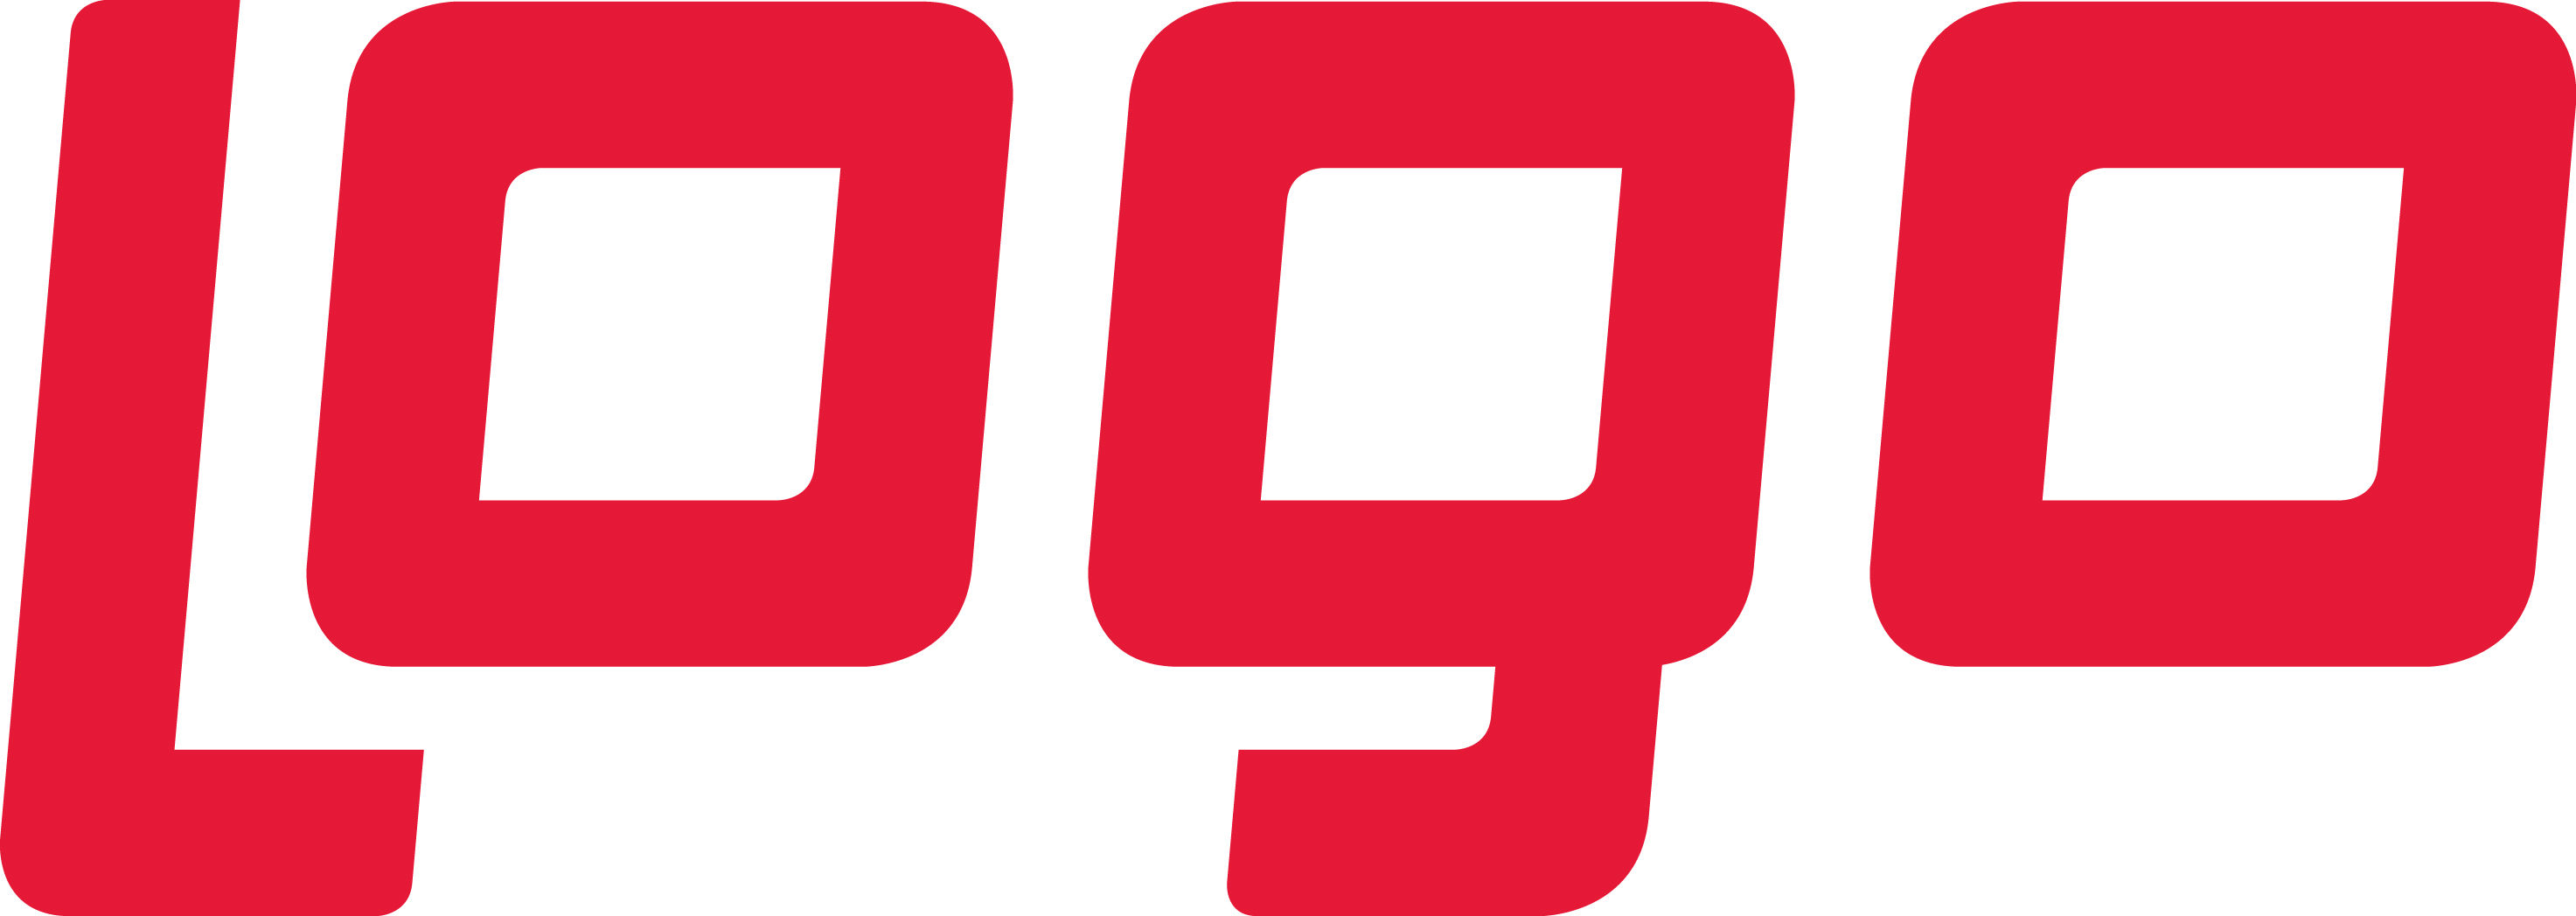 Rize Logo.